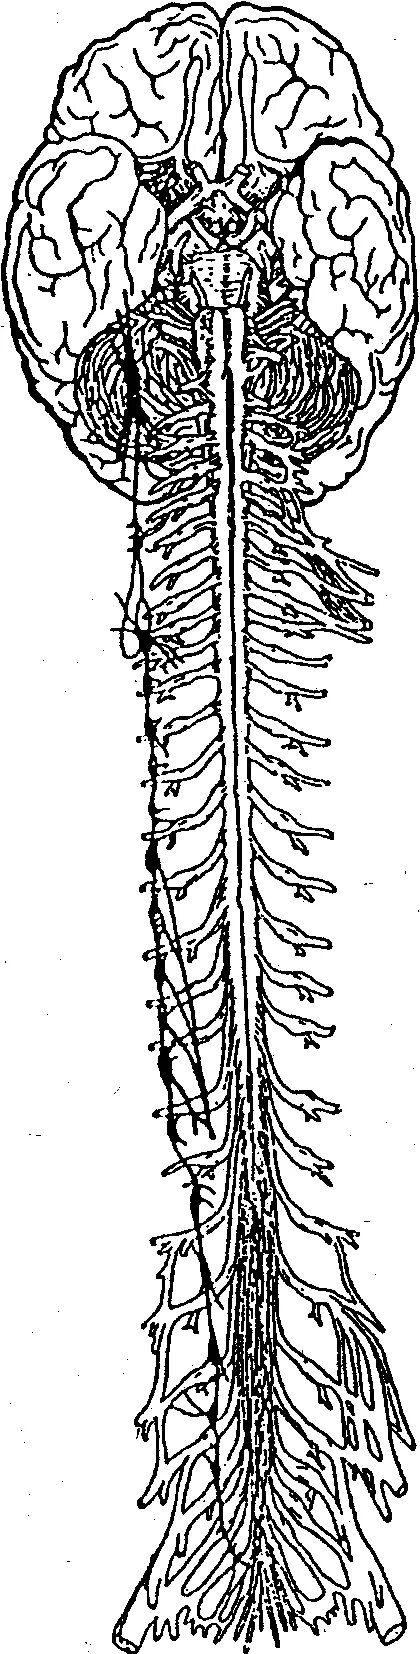 Нервная система человека спинной мозг. Позвоночный столб и спинной мозг. Головные и спинные нервы. Головной и спинной мозг рисунок. Серые столбы спинного мозга